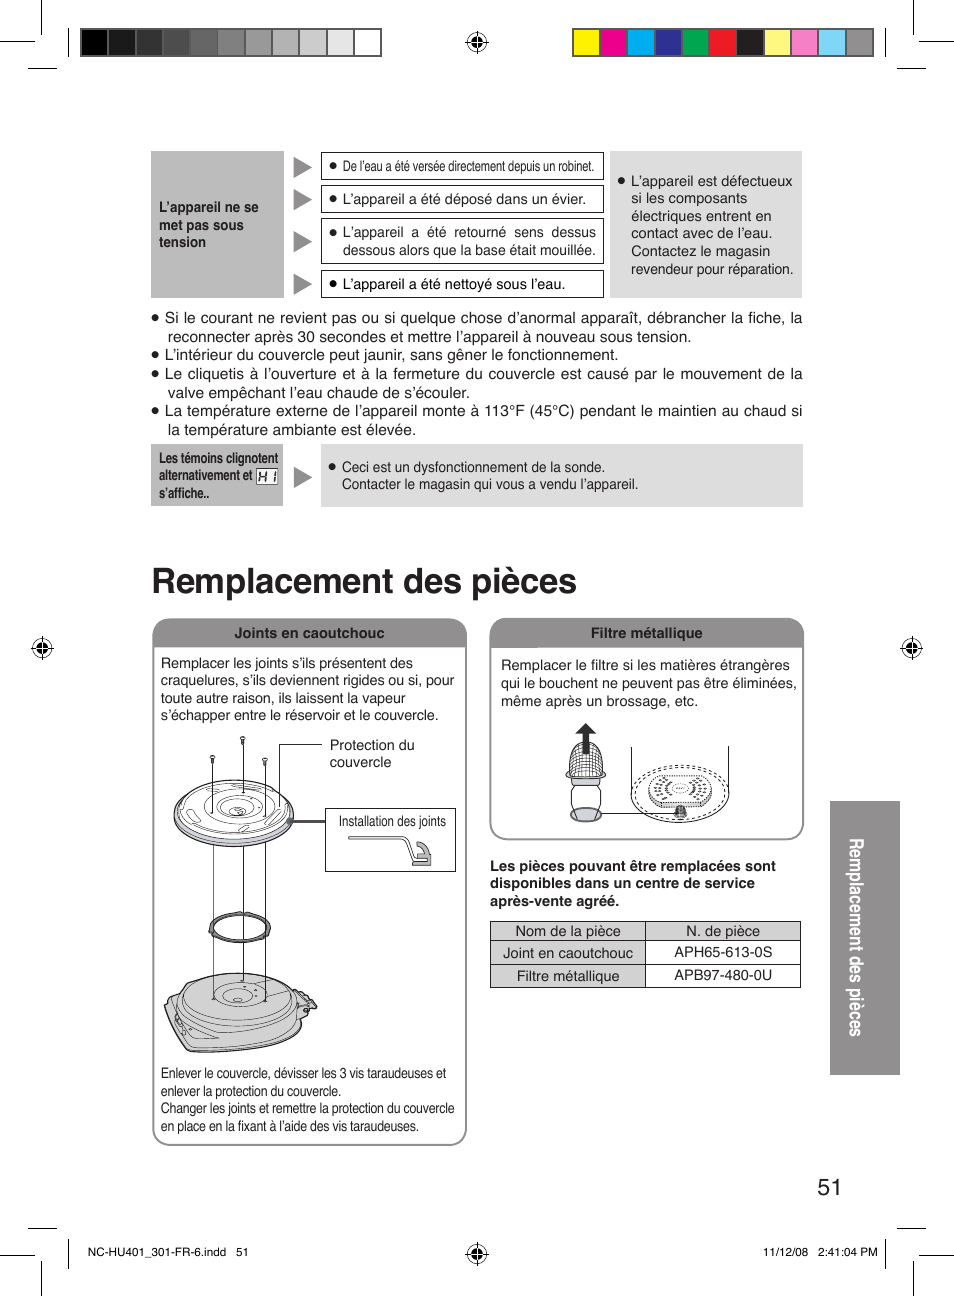 Remplacement des pièces | Panasonic NC-HU301P Manuel d'utilisation | Page 51 / 52